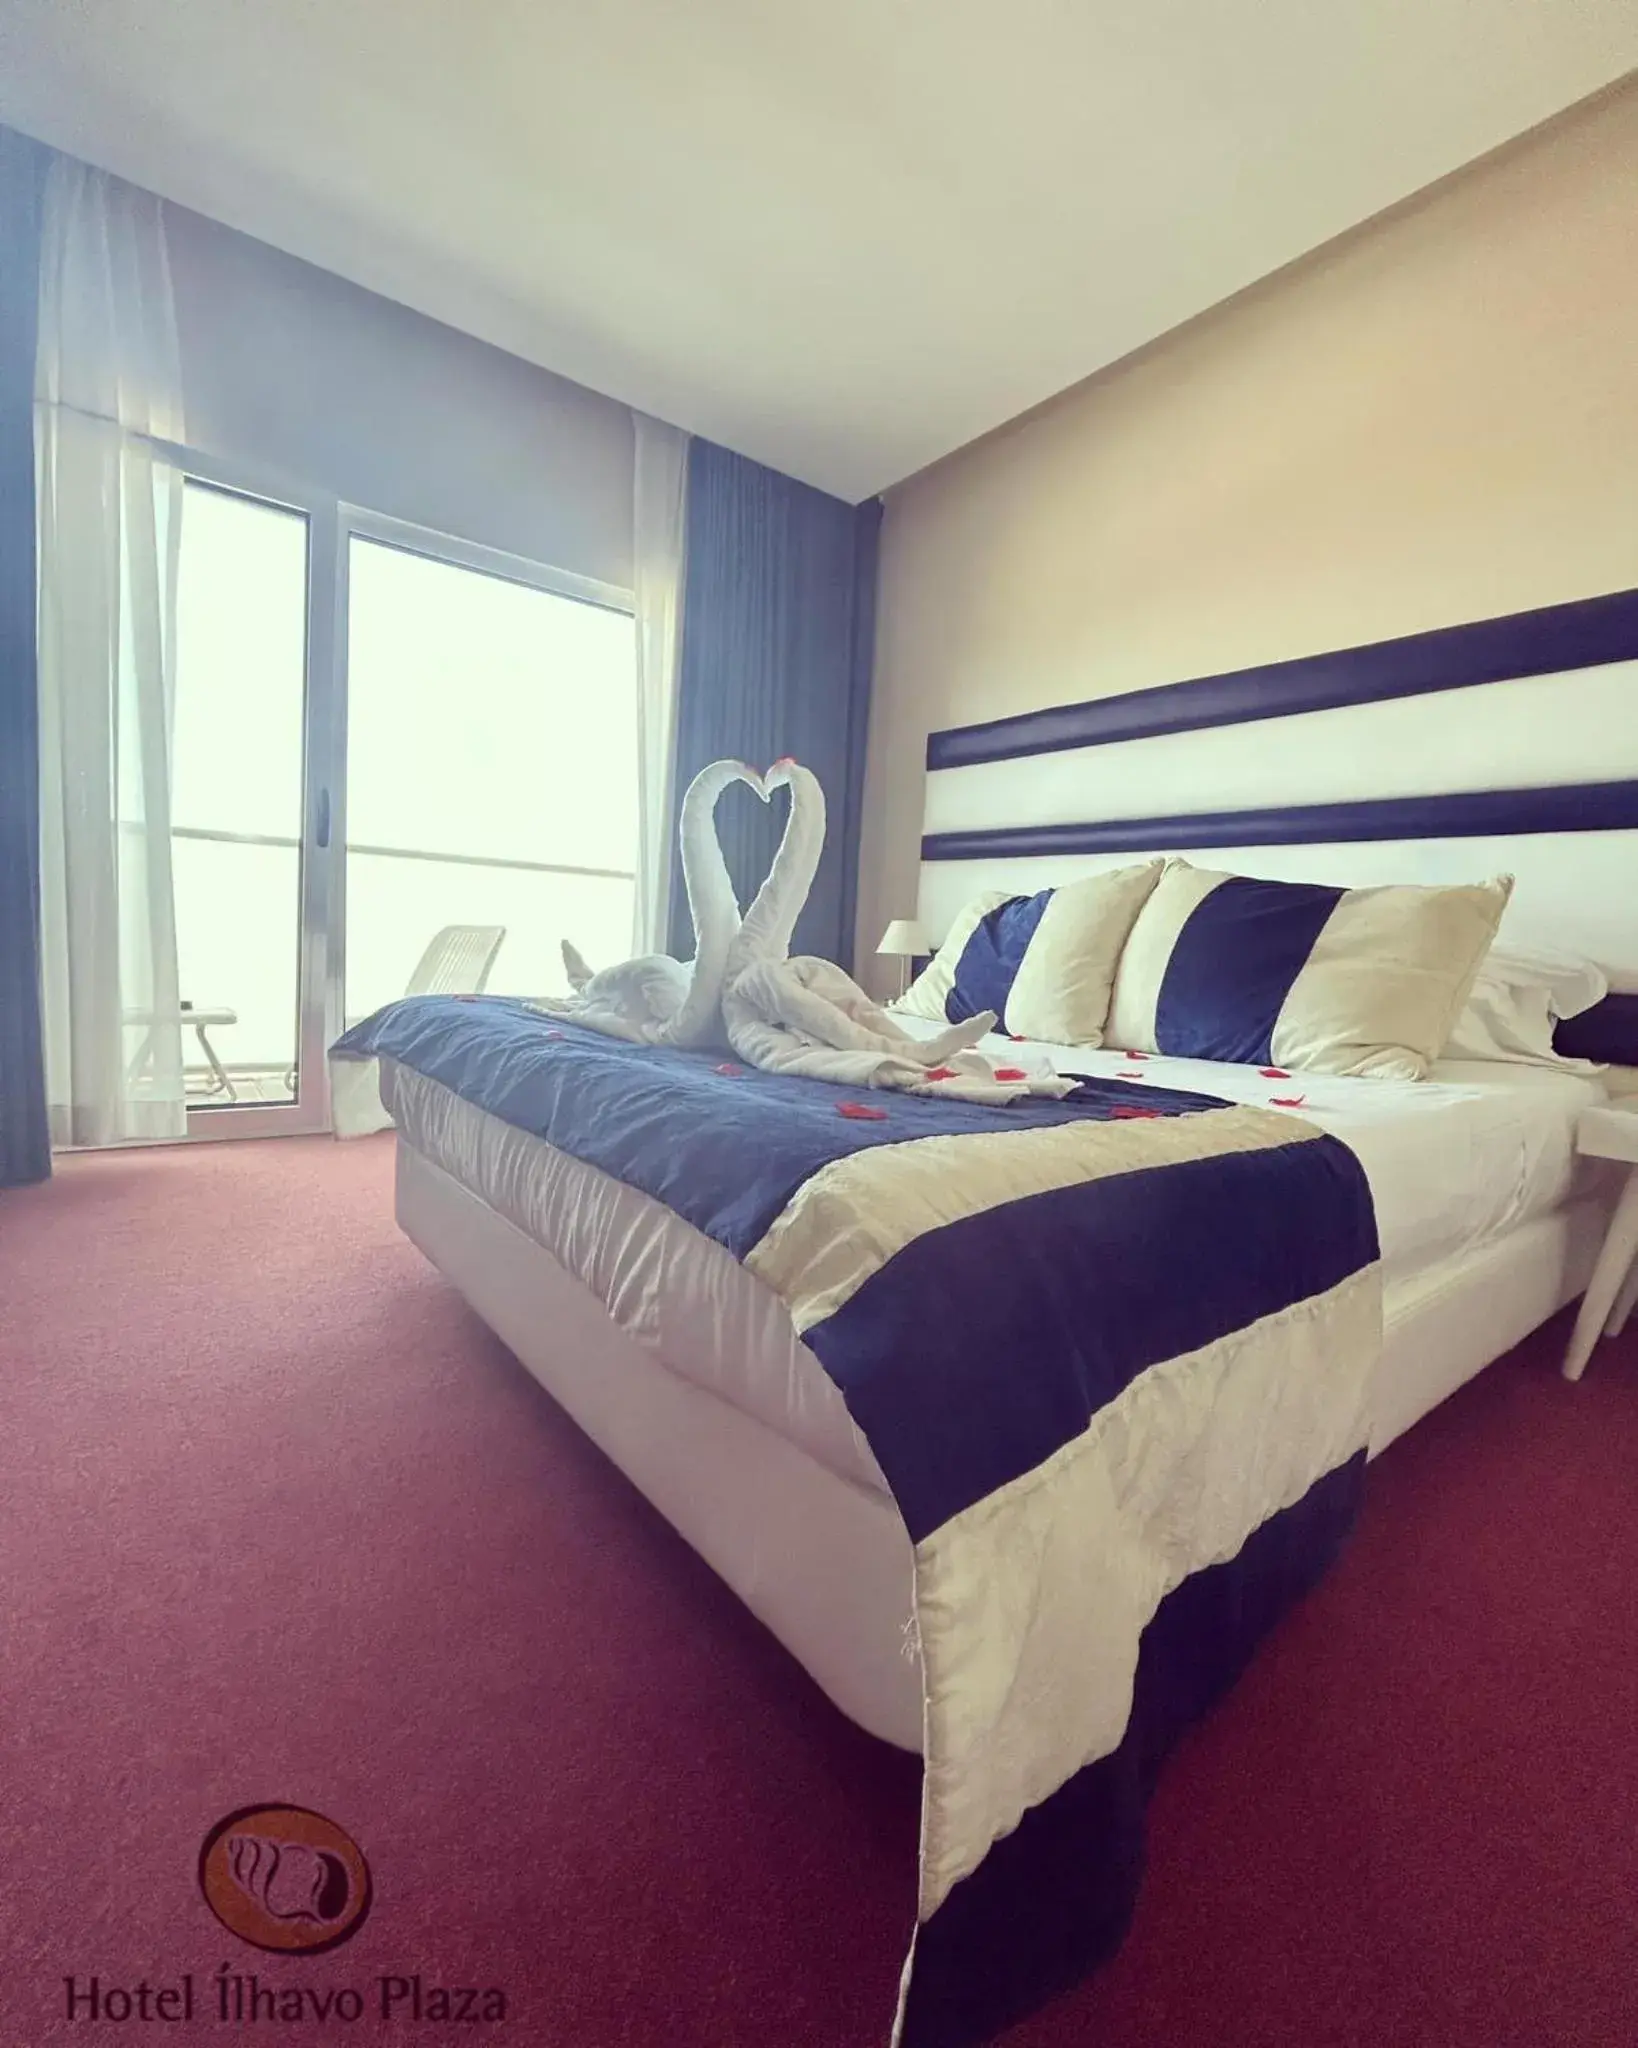 Bed in Hotel de Ilhavo Plaza & Spa